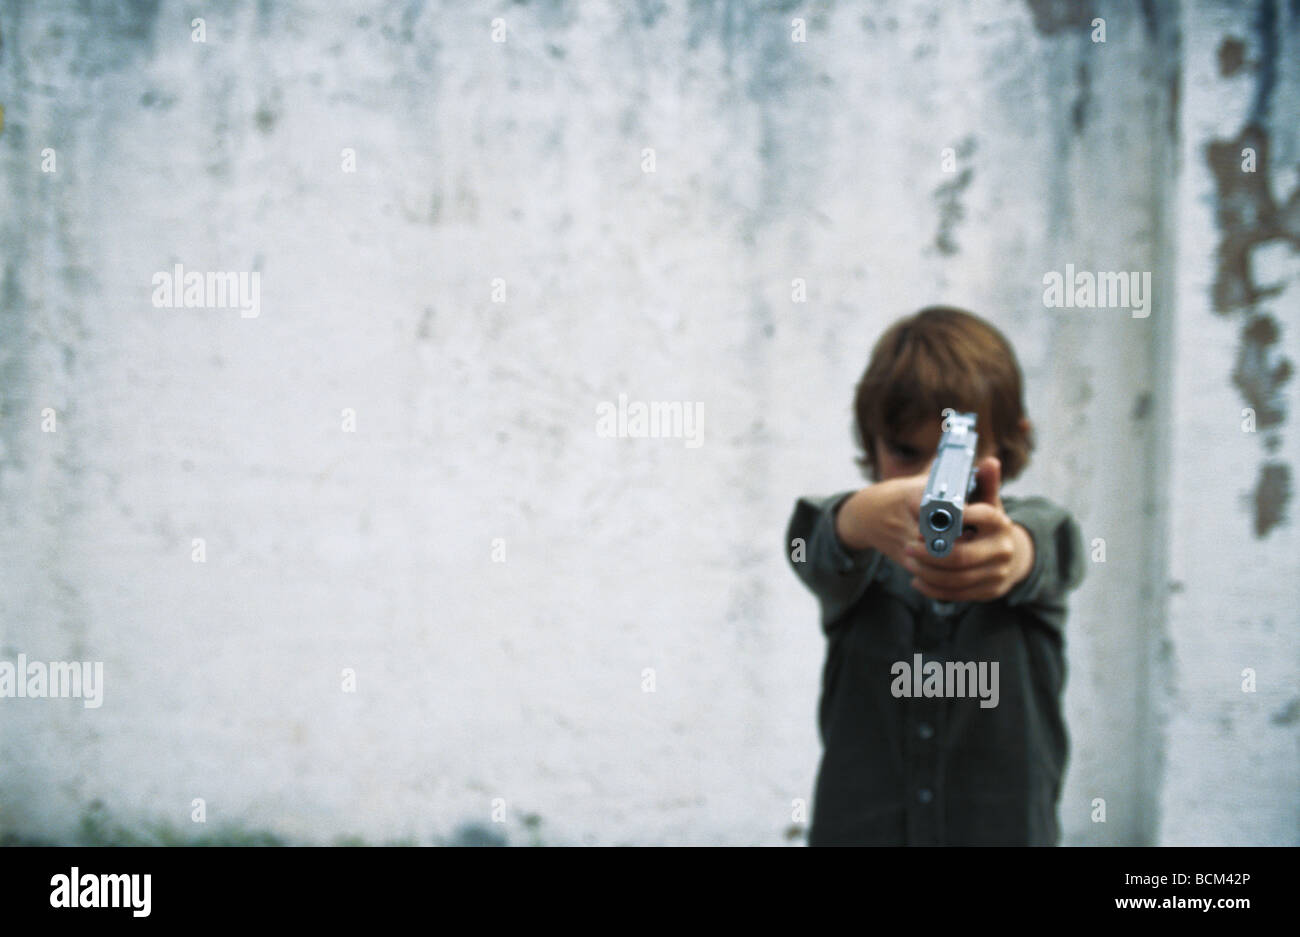 Boy aiming gun at camera Stock Photo